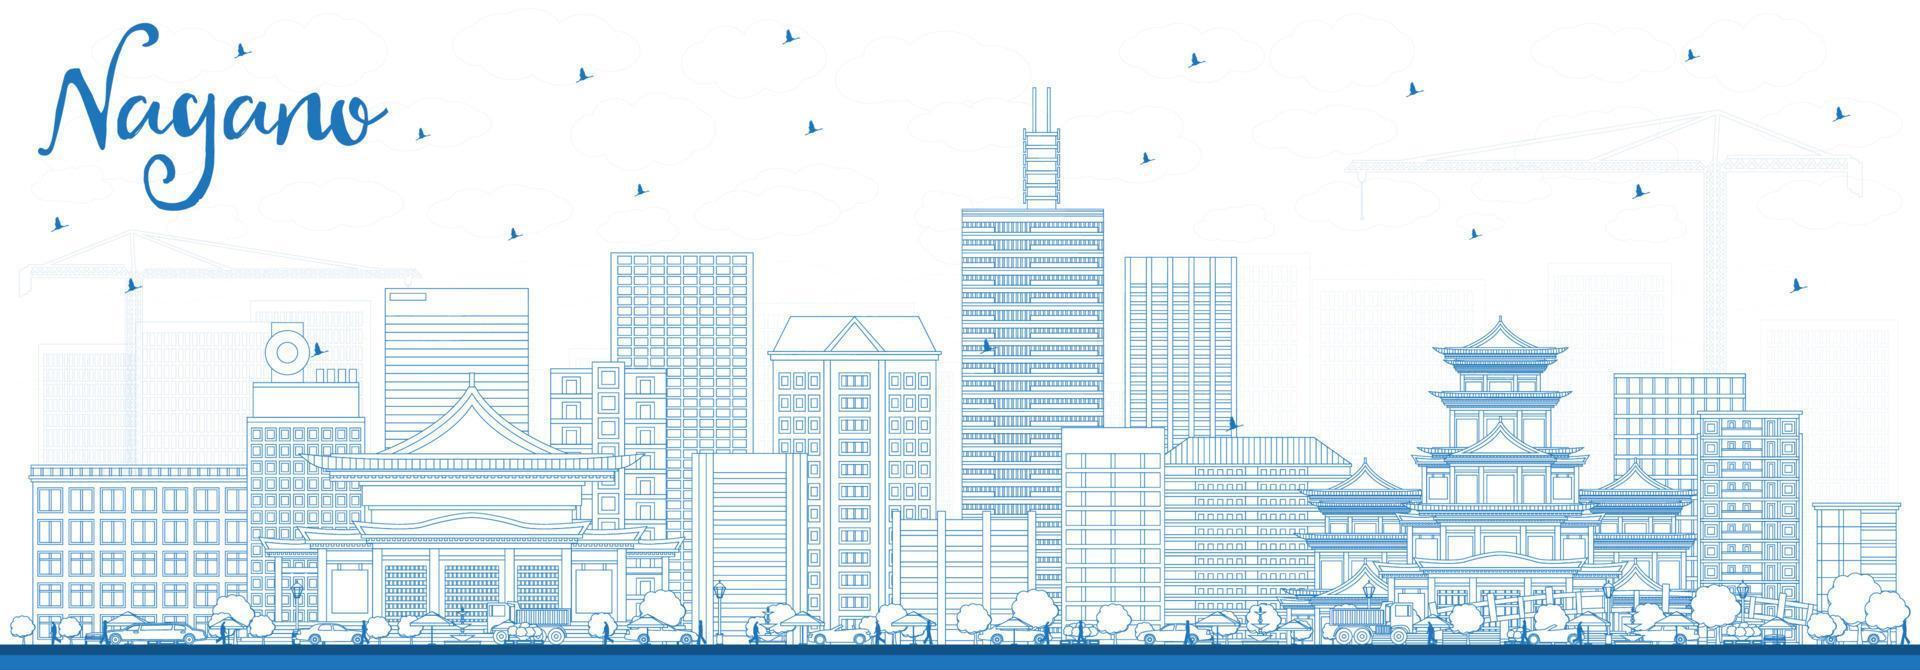 delinear el horizonte de la ciudad de nagano japón con edificios azules. vector